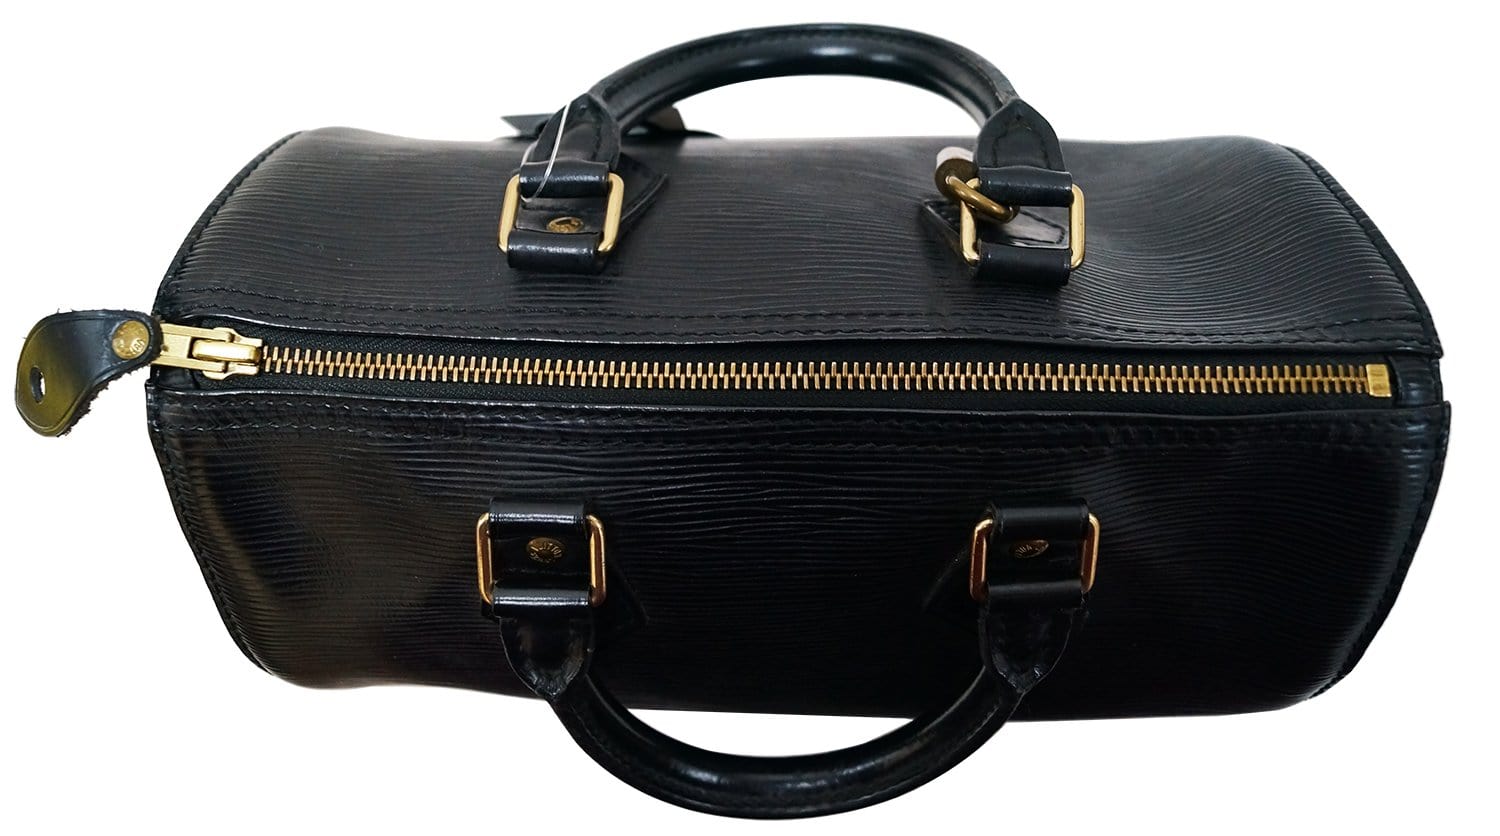 Louis Vuitton Epi Leather Speedy 25 Handbag